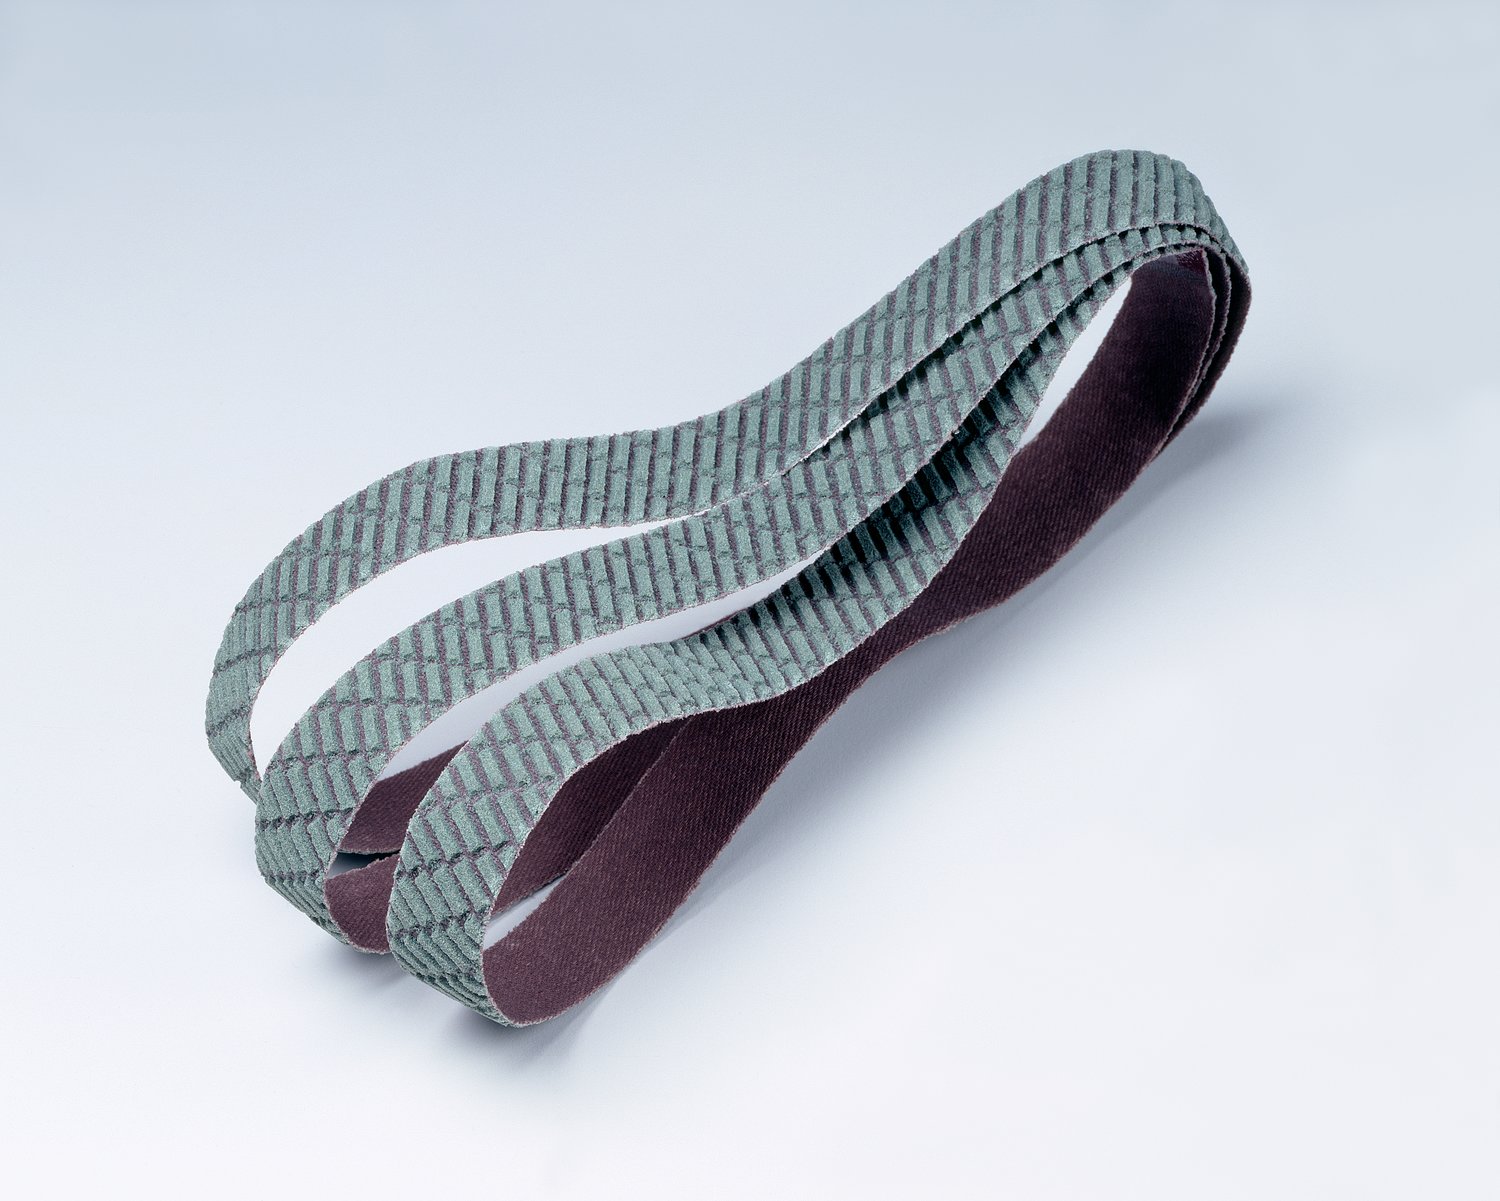 7010514357 - 3M Trizact Cloth Belt 327DC, A30 X-weight, 6 in x 132 in, Film-lok, No
Flex